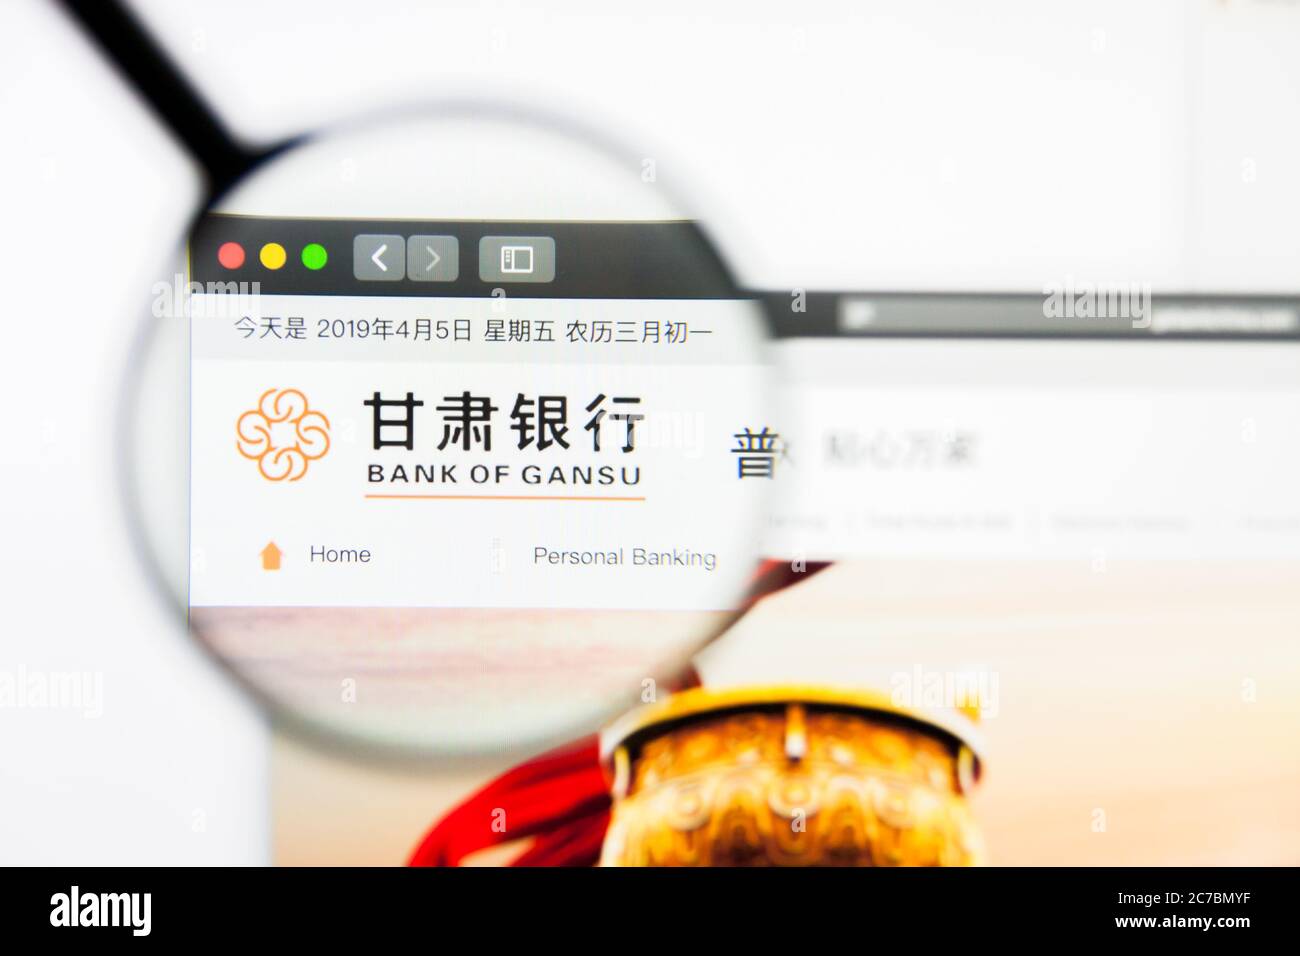 Los Angeles, California, USA - 5 aprile 2019: Editoriale illustrativo della homepage del sito Web di Bank of Gansu. Logo Bank of Gansu visibile sullo schermo del display. Foto Stock